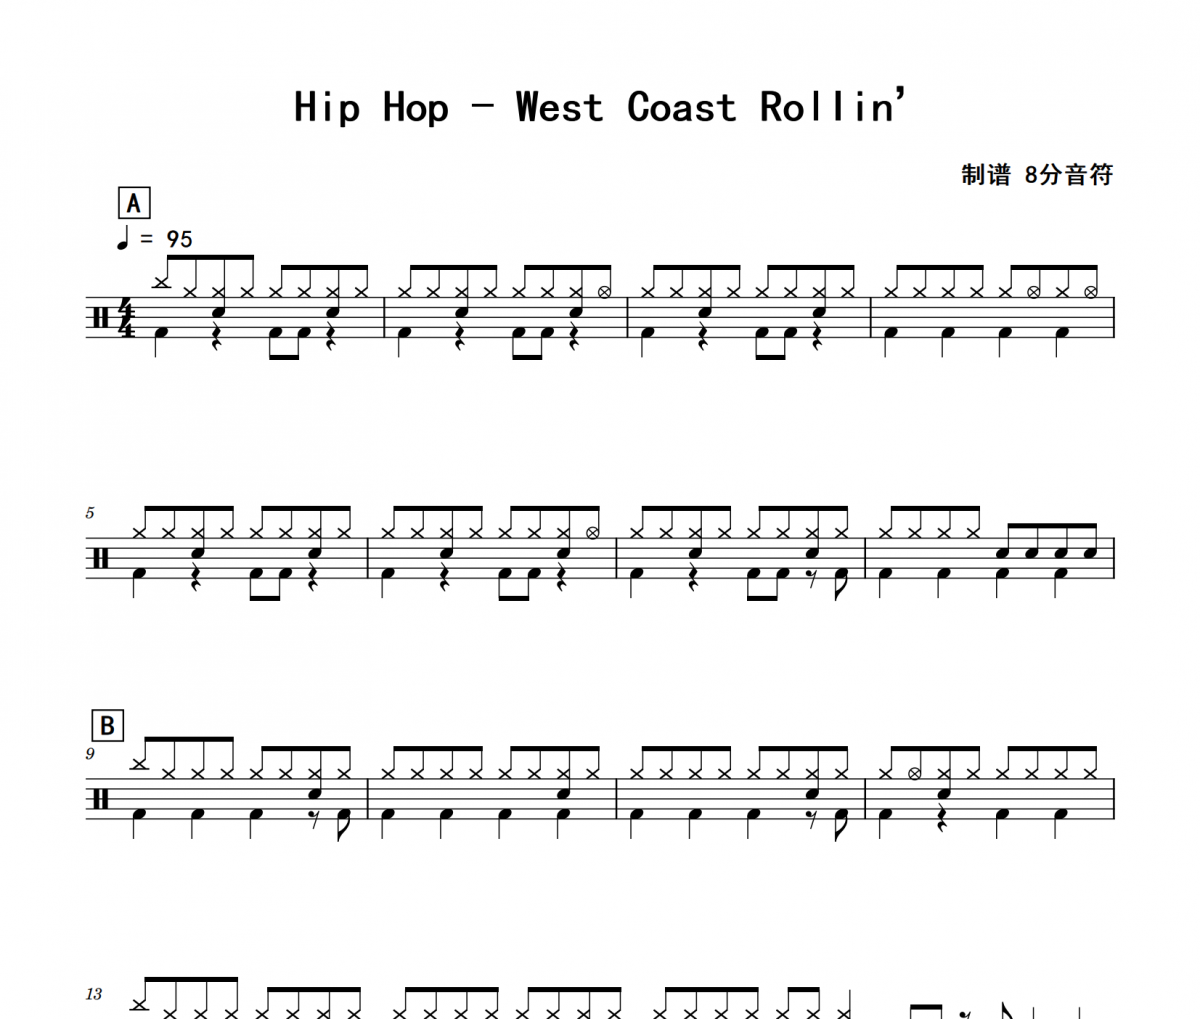 West Coast Rollin’鼓谱 Hip Hop《West Coast Rollin’》架子鼓|爵士鼓|鼓谱 8